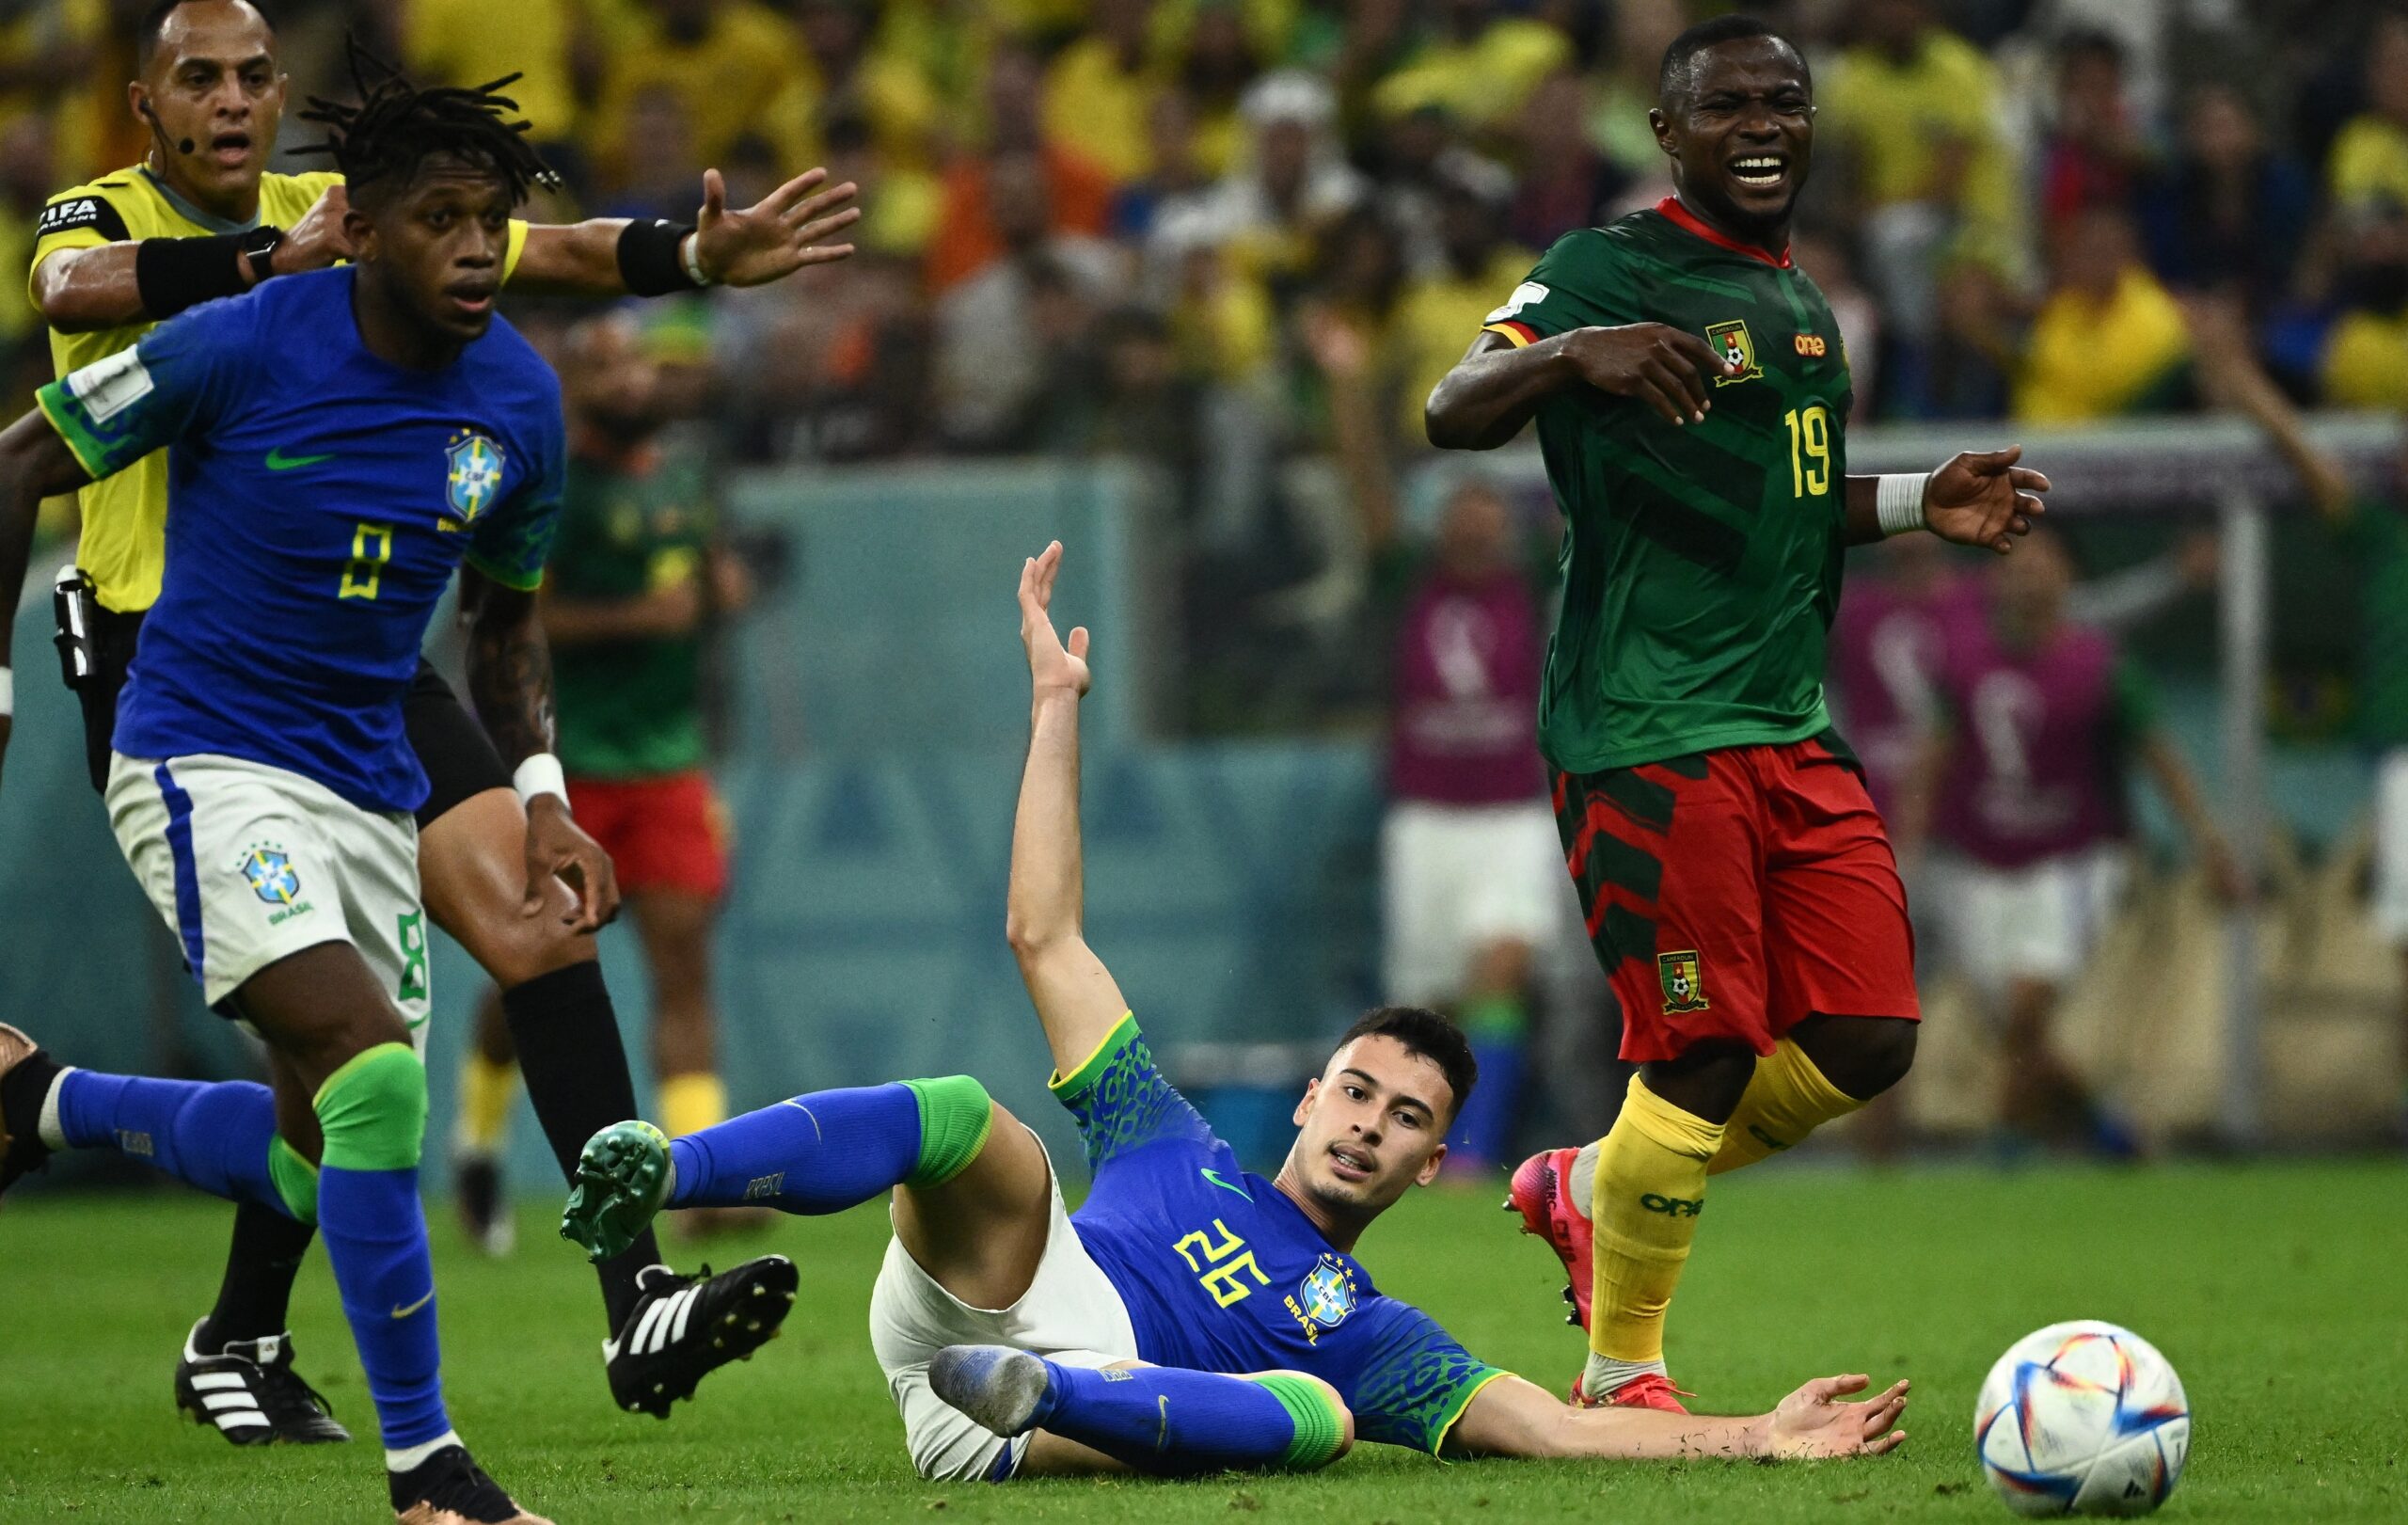 Pouco inspirado, Brasil perde para Camarões com gol nos acréscimos